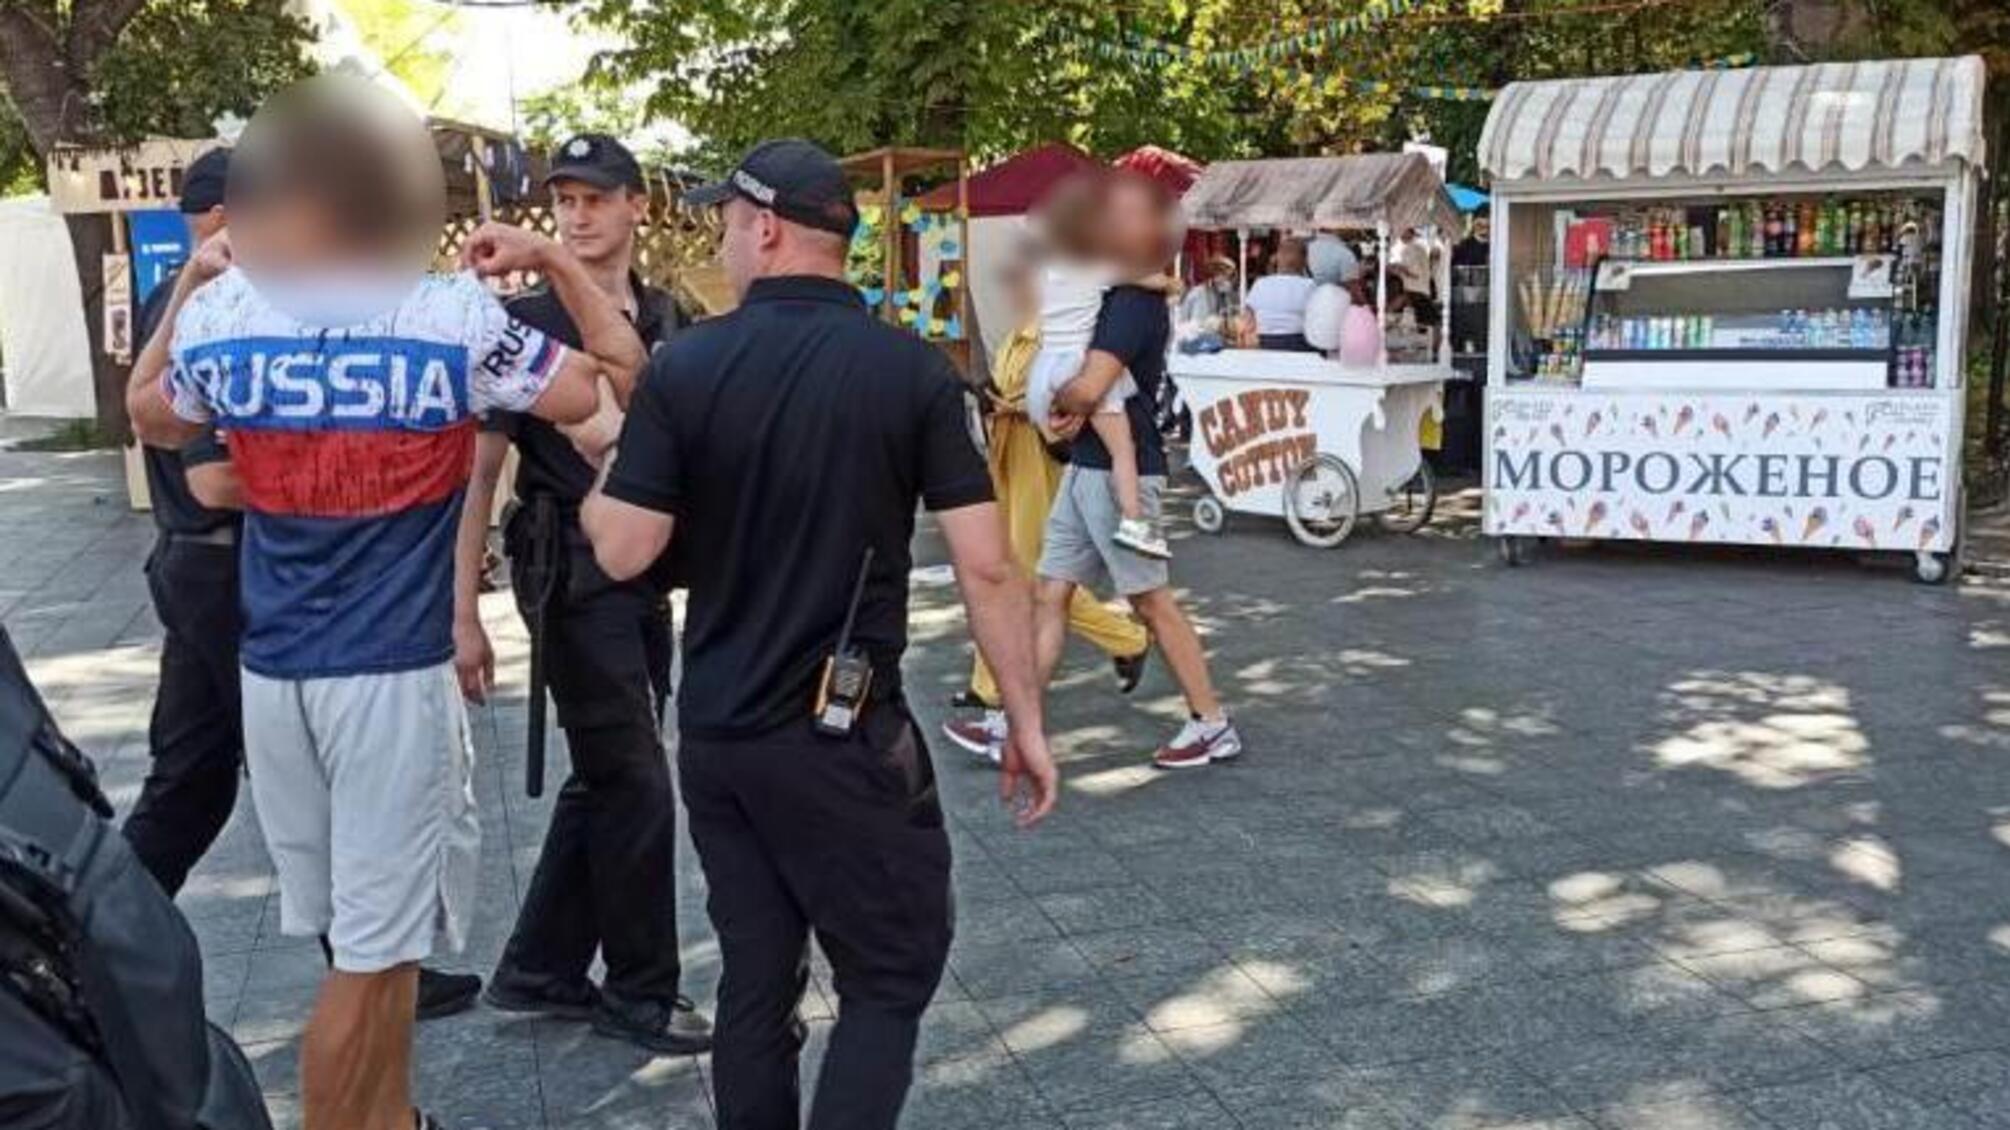 Поліцейські притягують до адміністративної відповідальності 26-річного іноземця за порушення громадського порядку під час урочистостей в центрі Одеси